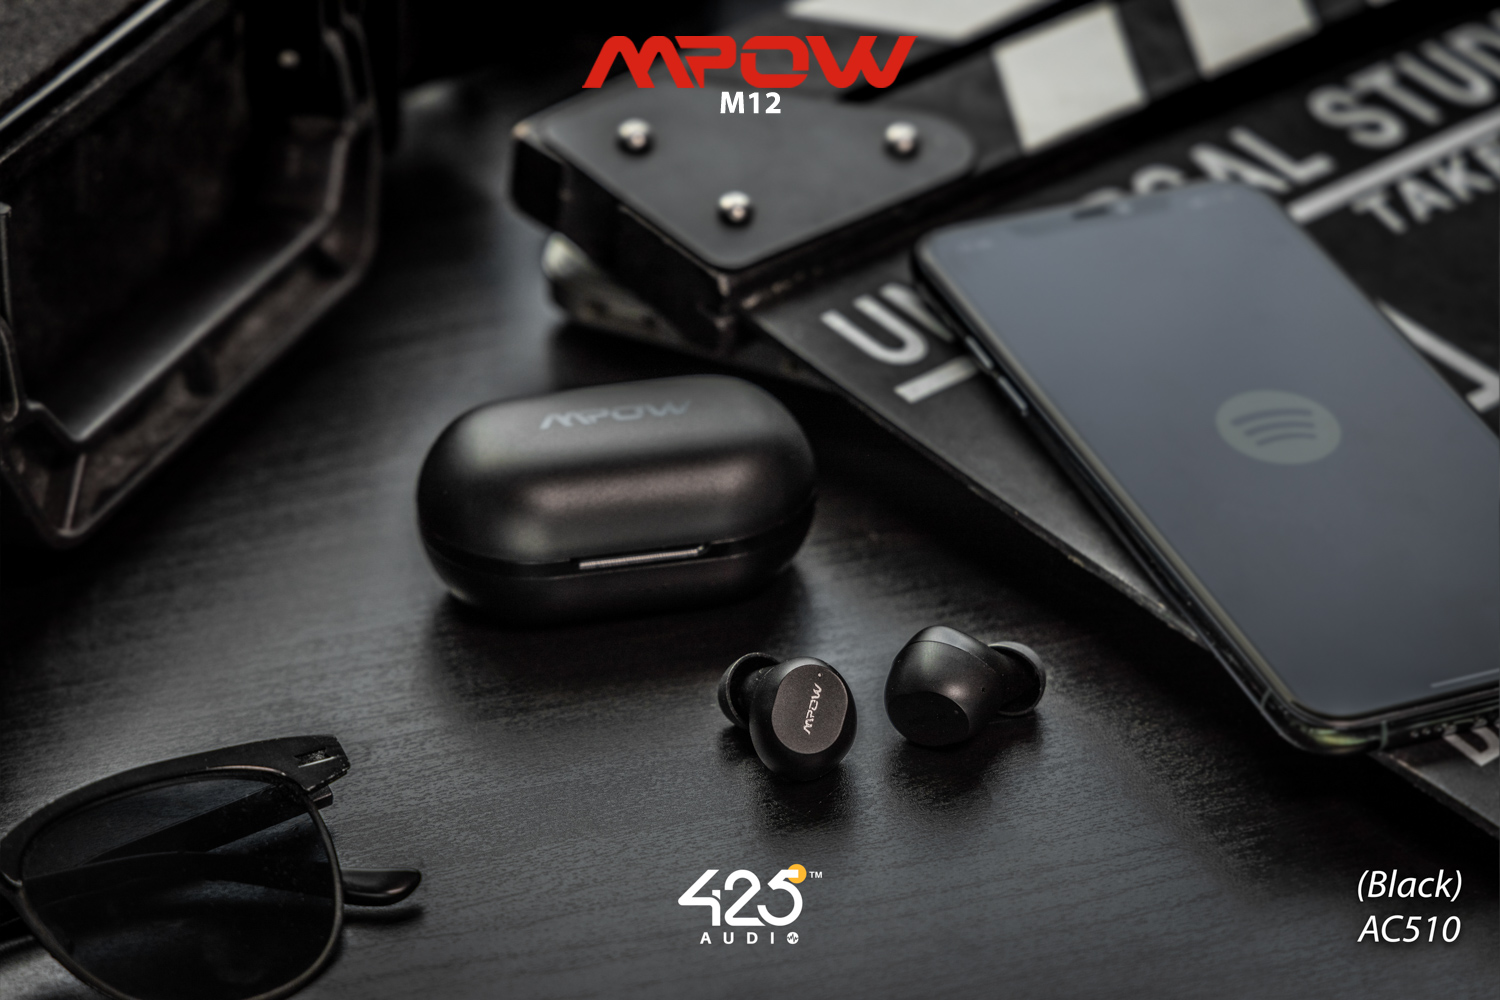 mpow m12,black,true wireless,ipx8,เสียงดี,เบสหนัก,รายละเอียดคมชัด,แบตอึด,หูฟังไร้สาย,หูฟังเสียงดี